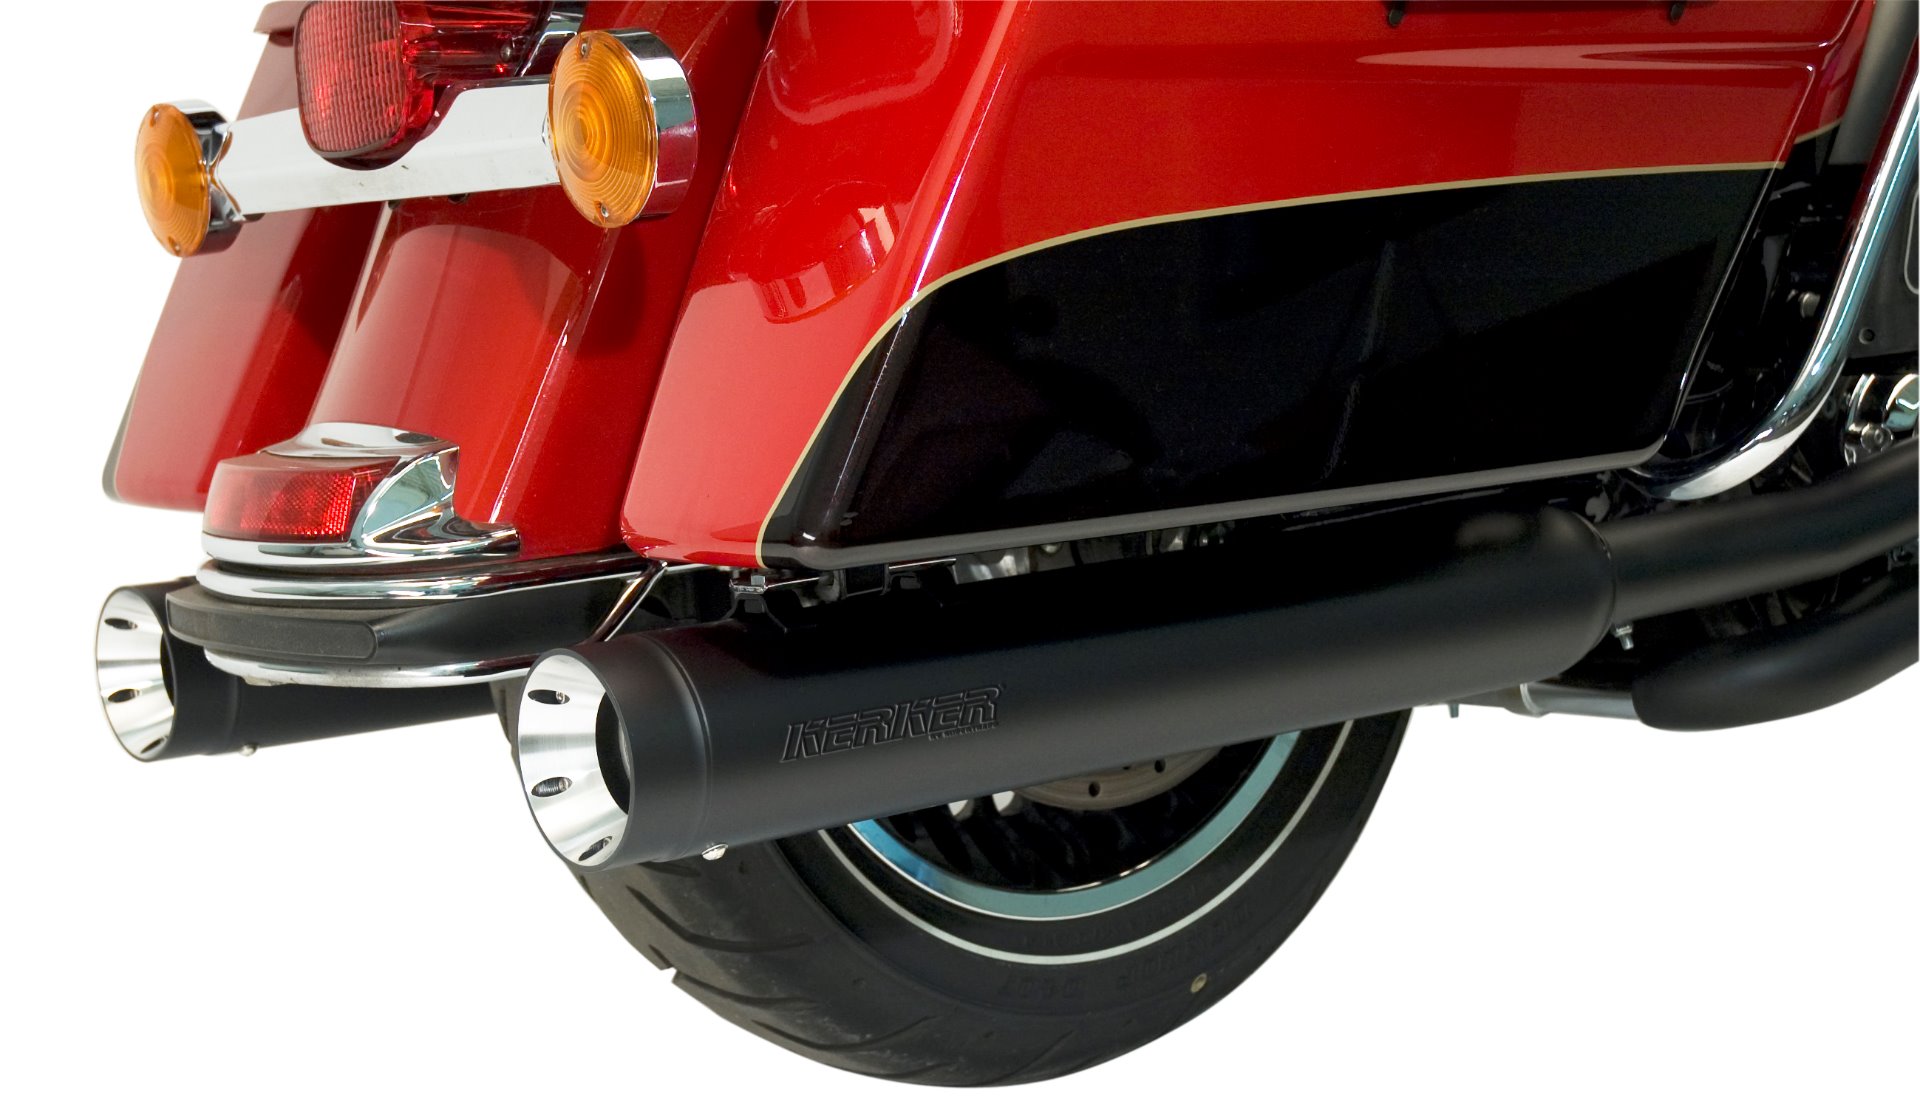 Kerker 147-78228 - Slip-on Stout Muffler - Harley Davidson FLH/FLT '17-21 - Black